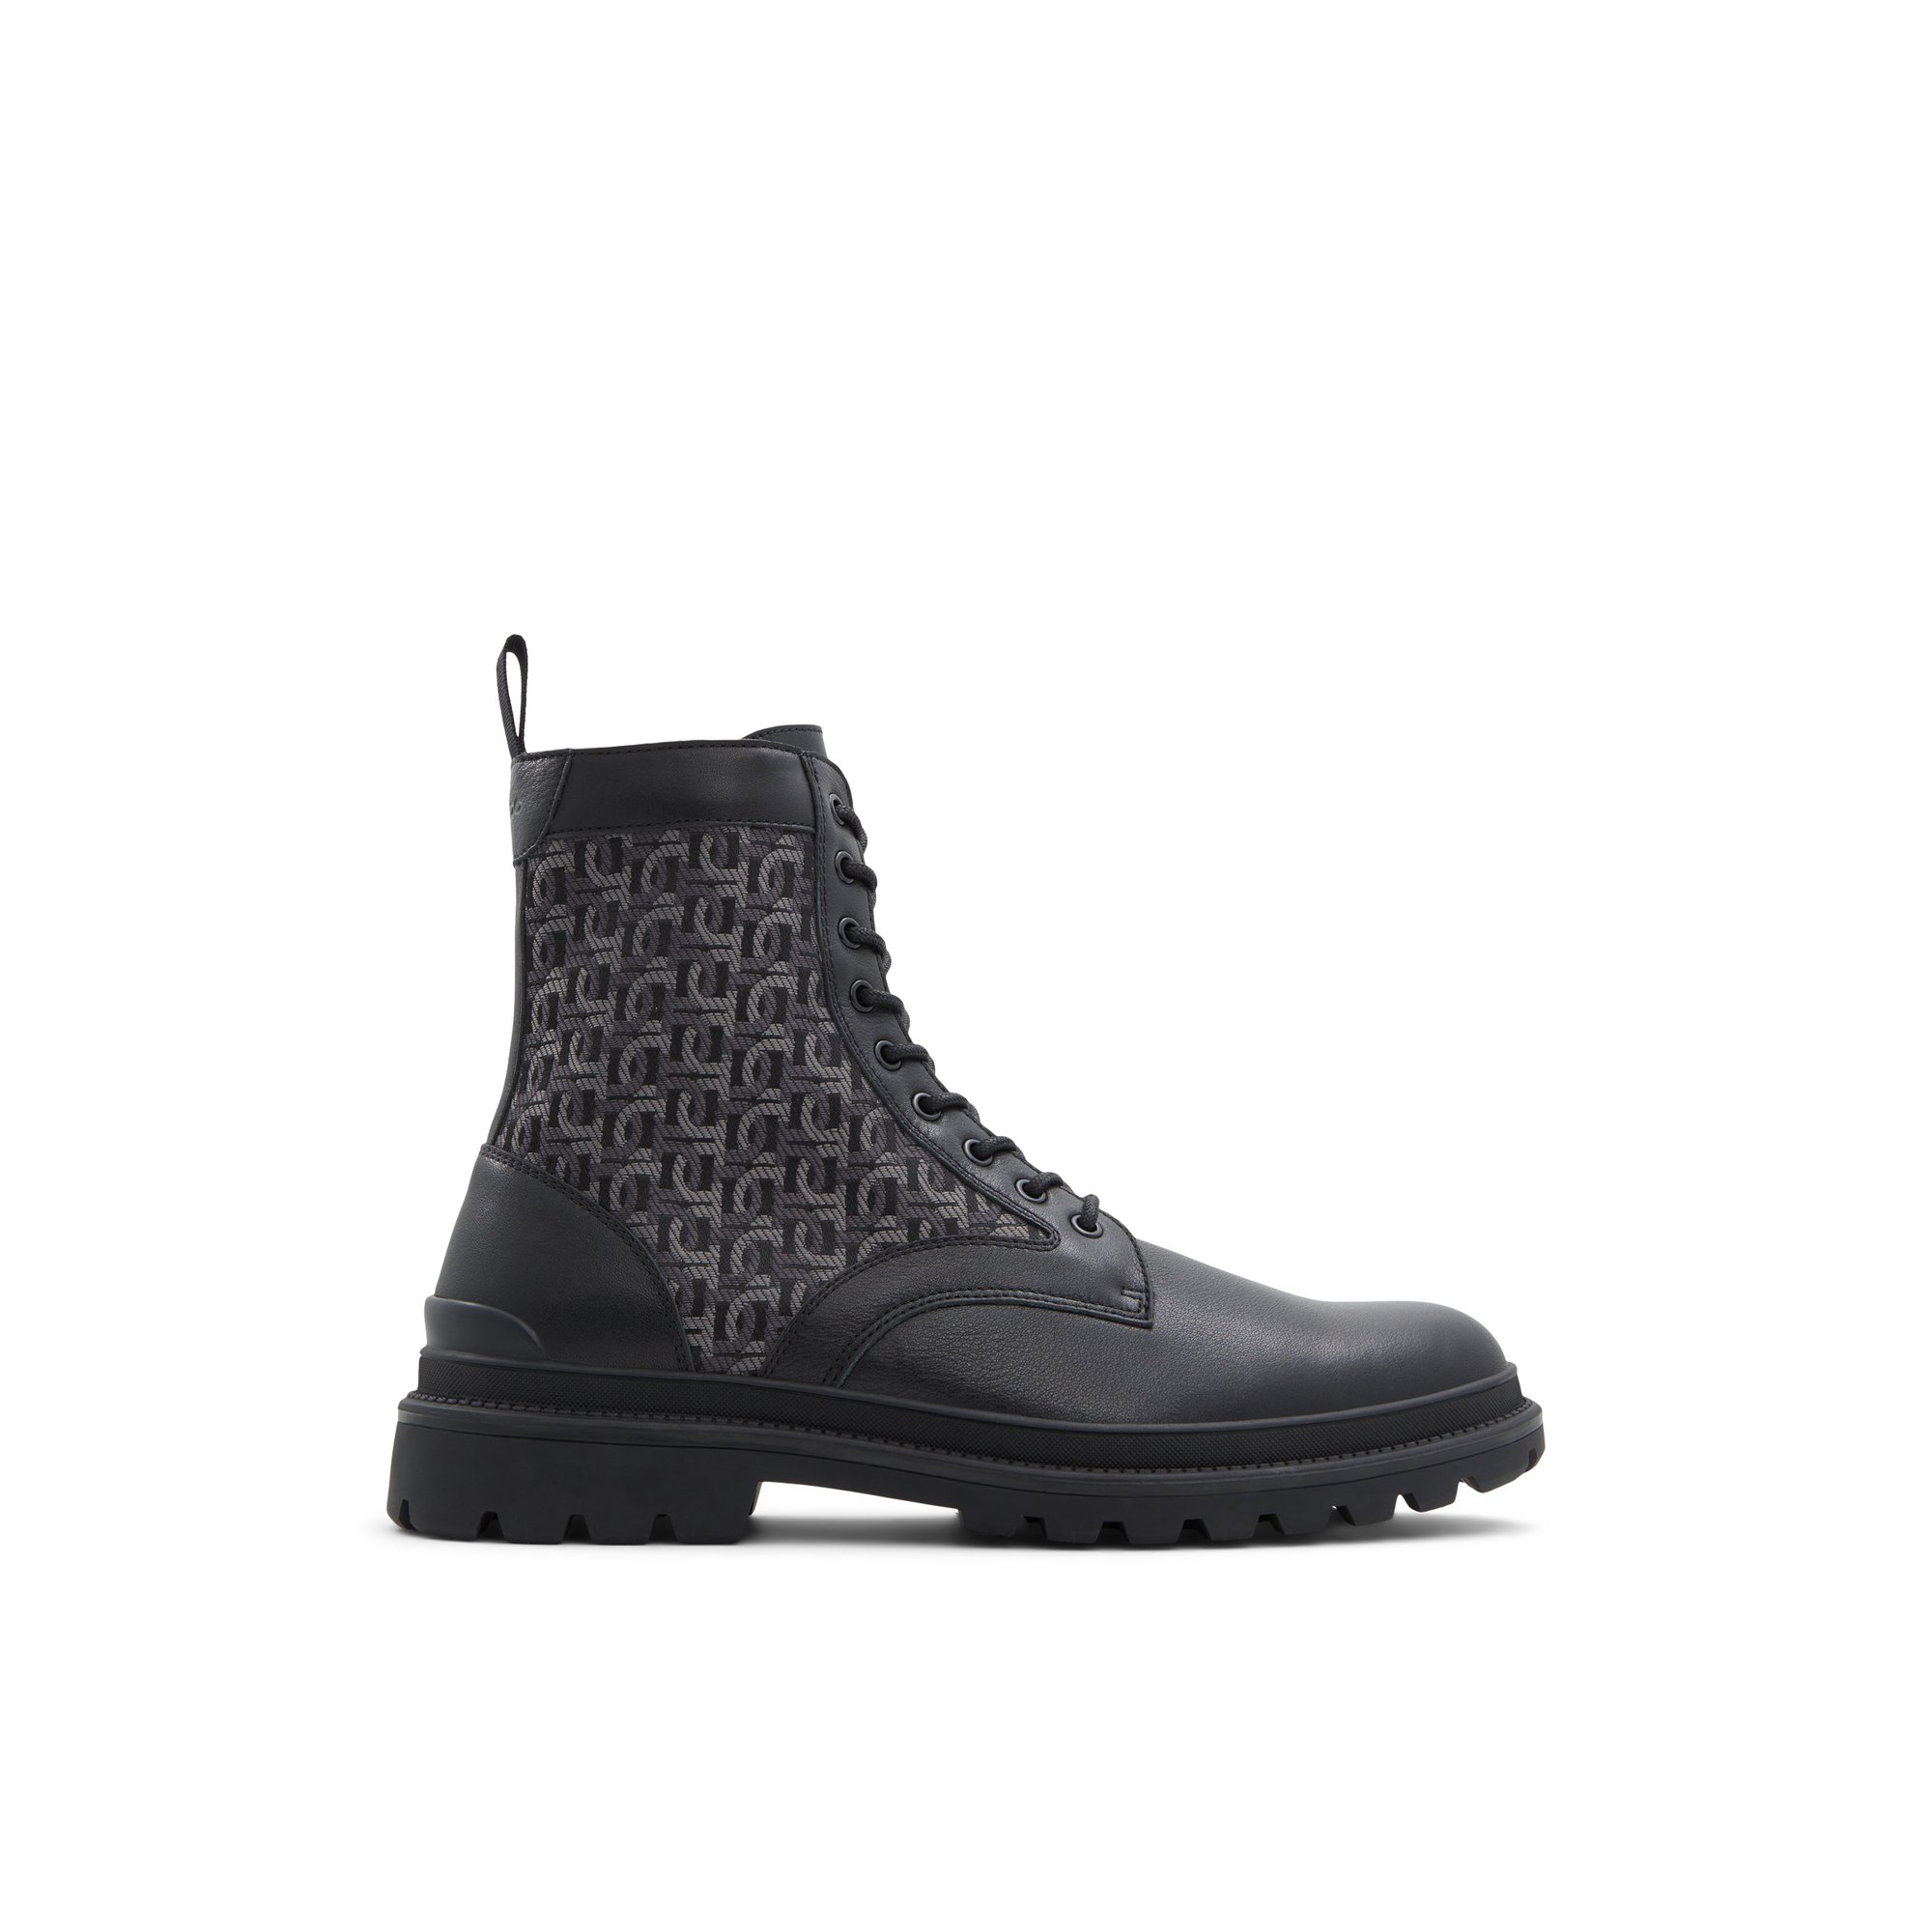 ALDO Muuler-l - Men's Boots Casual - Black